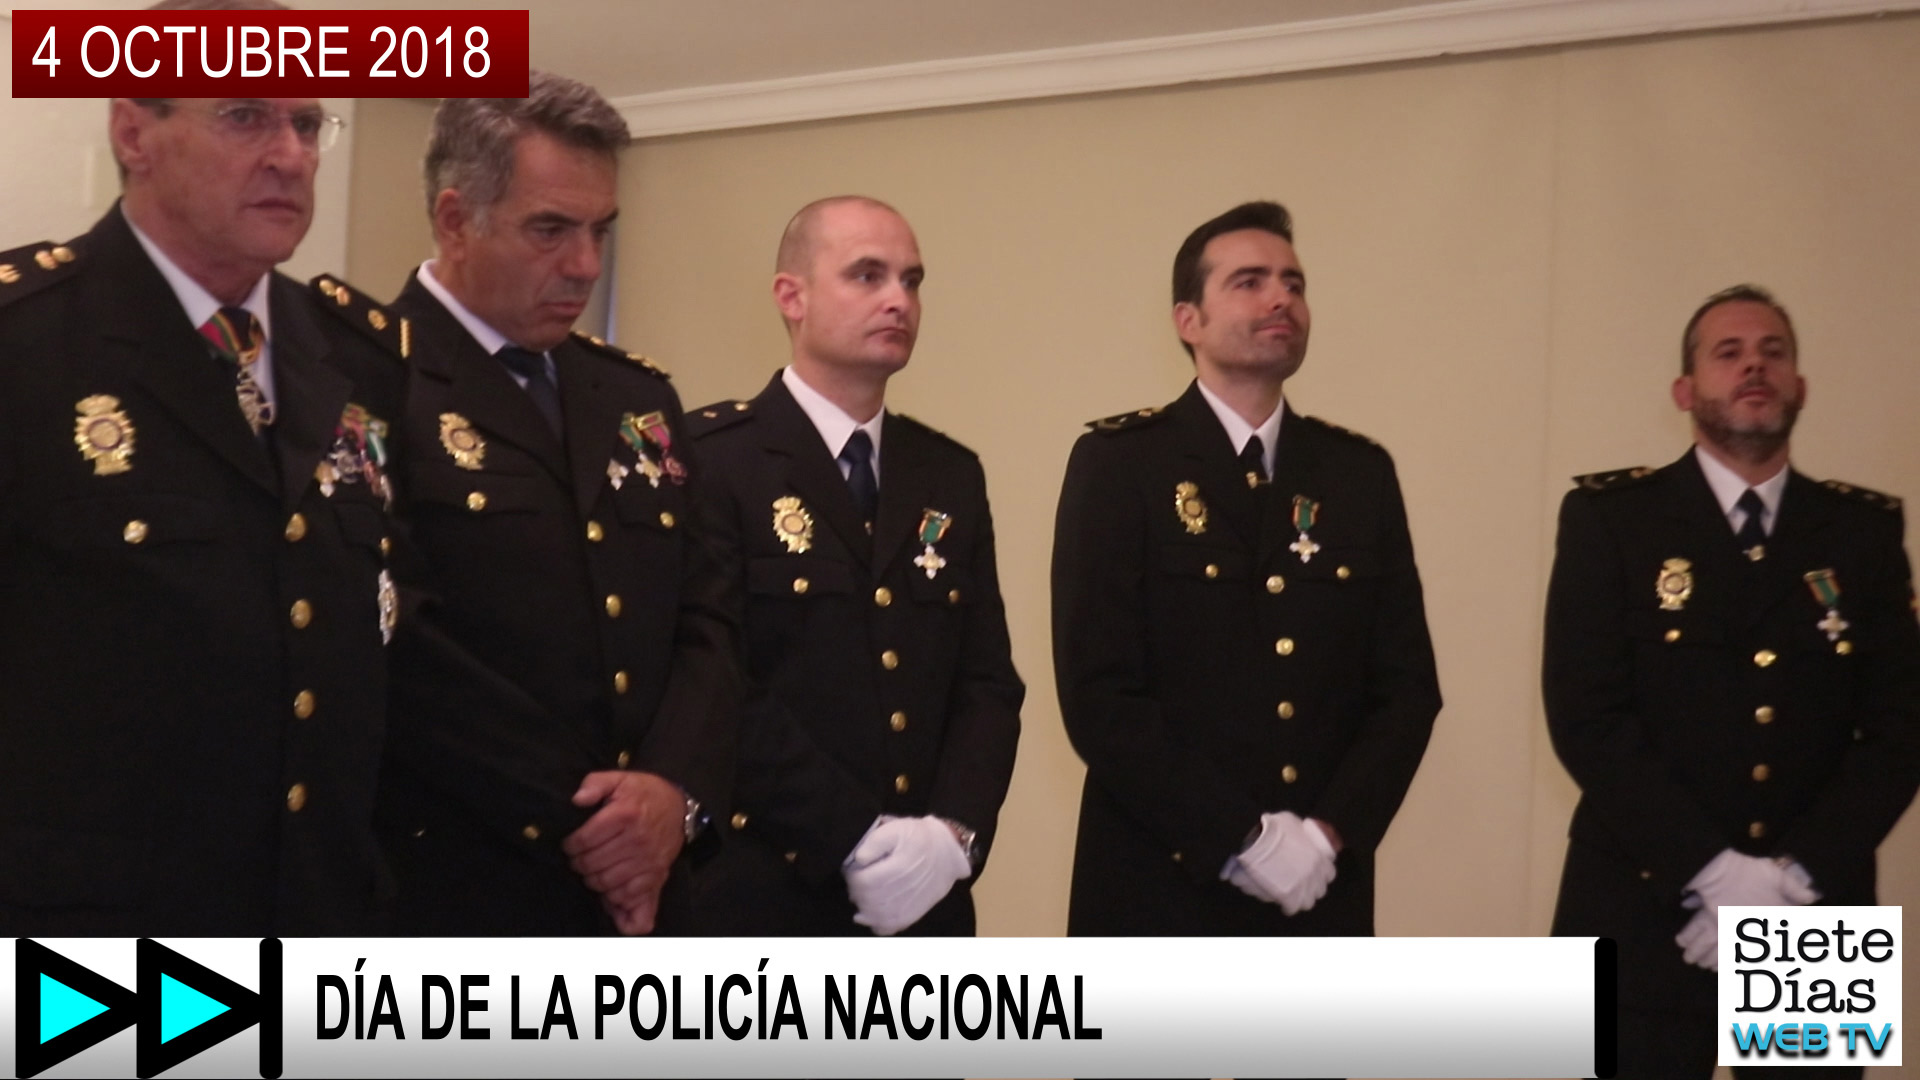 DÍA DE LA POLICÍA NACIONAL – 4 OCTUBRE 2018